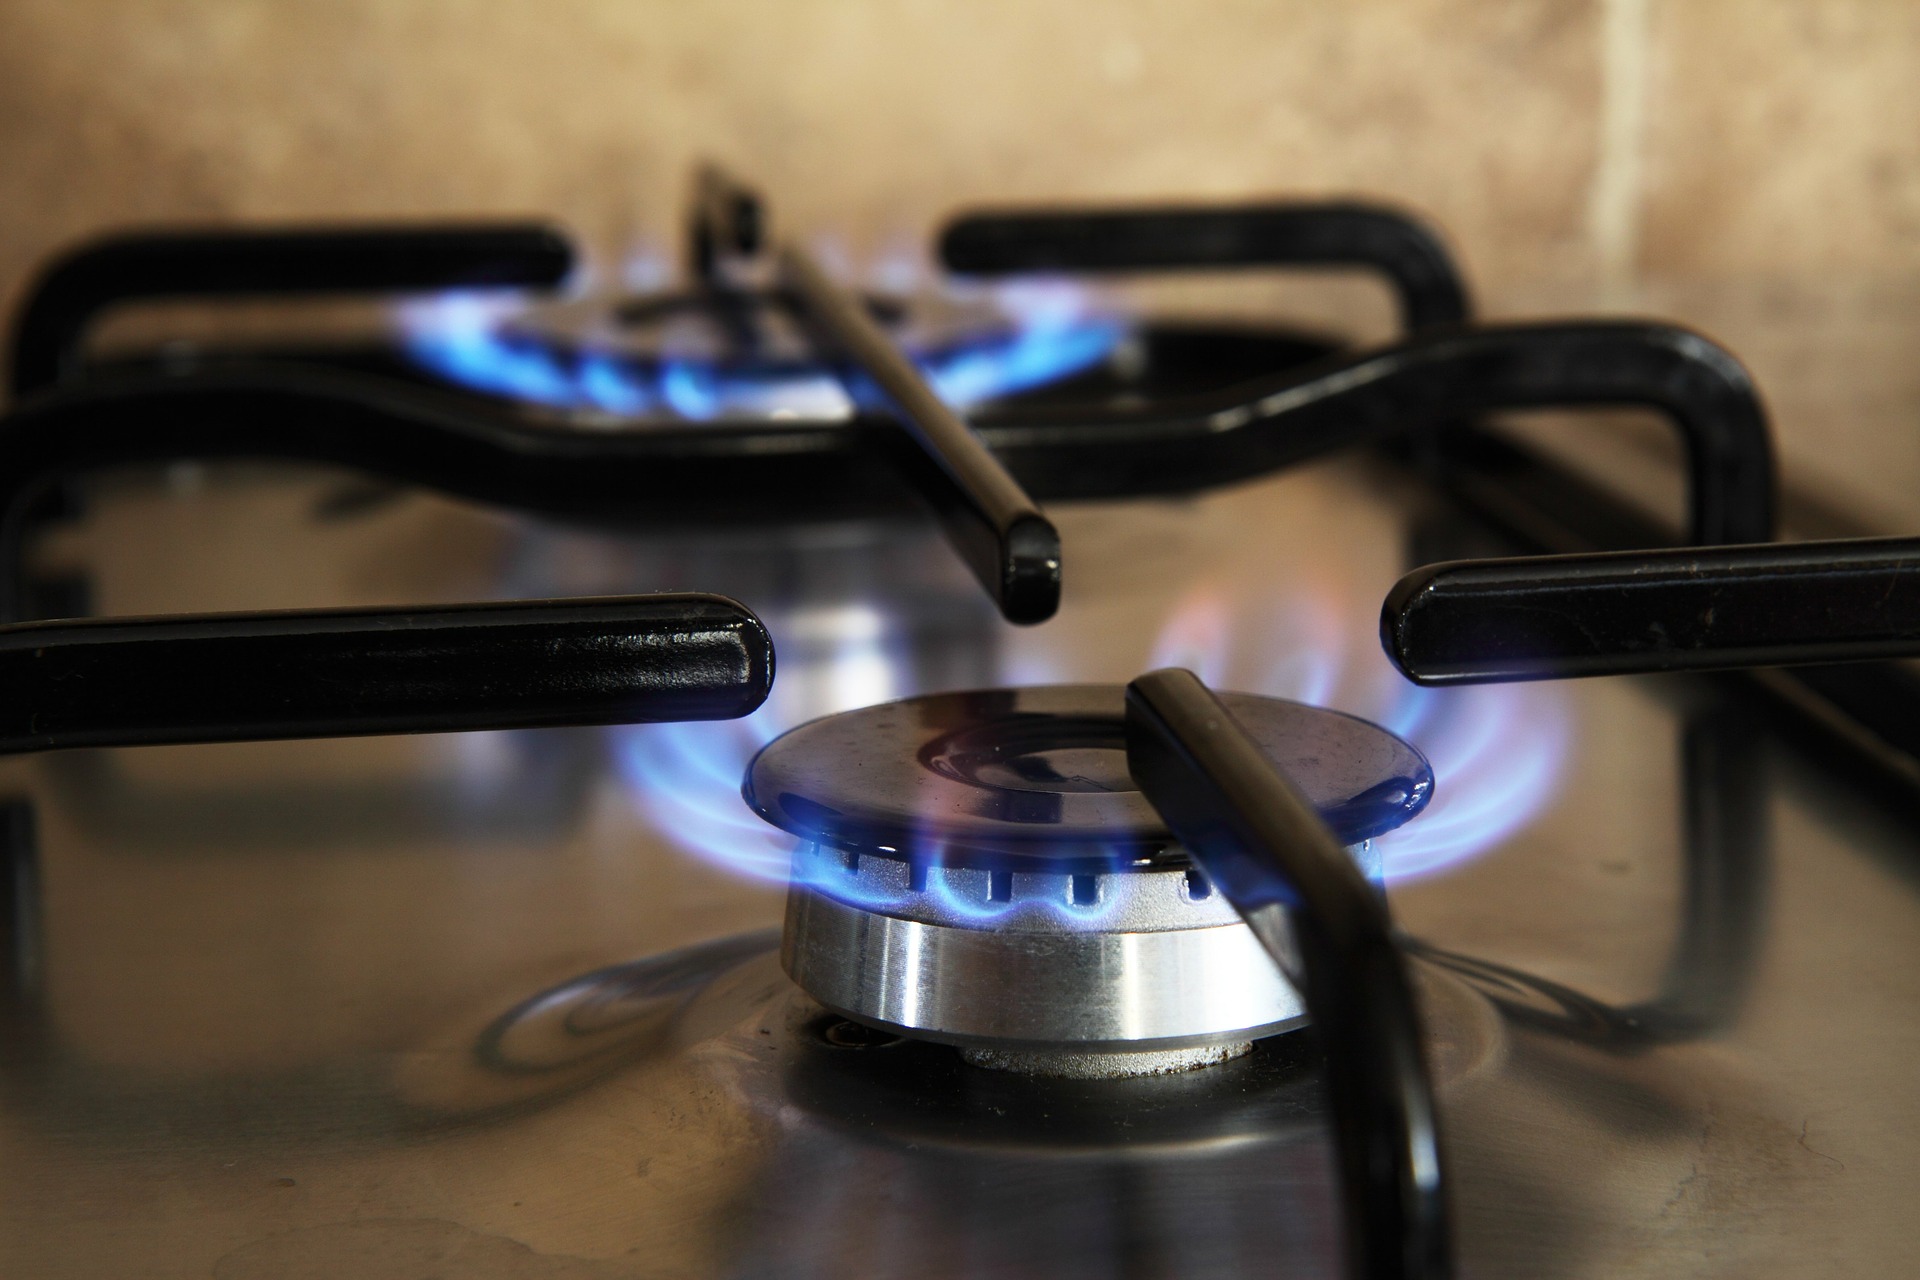 Noskaidro, aprēķināt jauno gāzes cenu; mājsaimniecībām rēķini – Dienas Ziņas